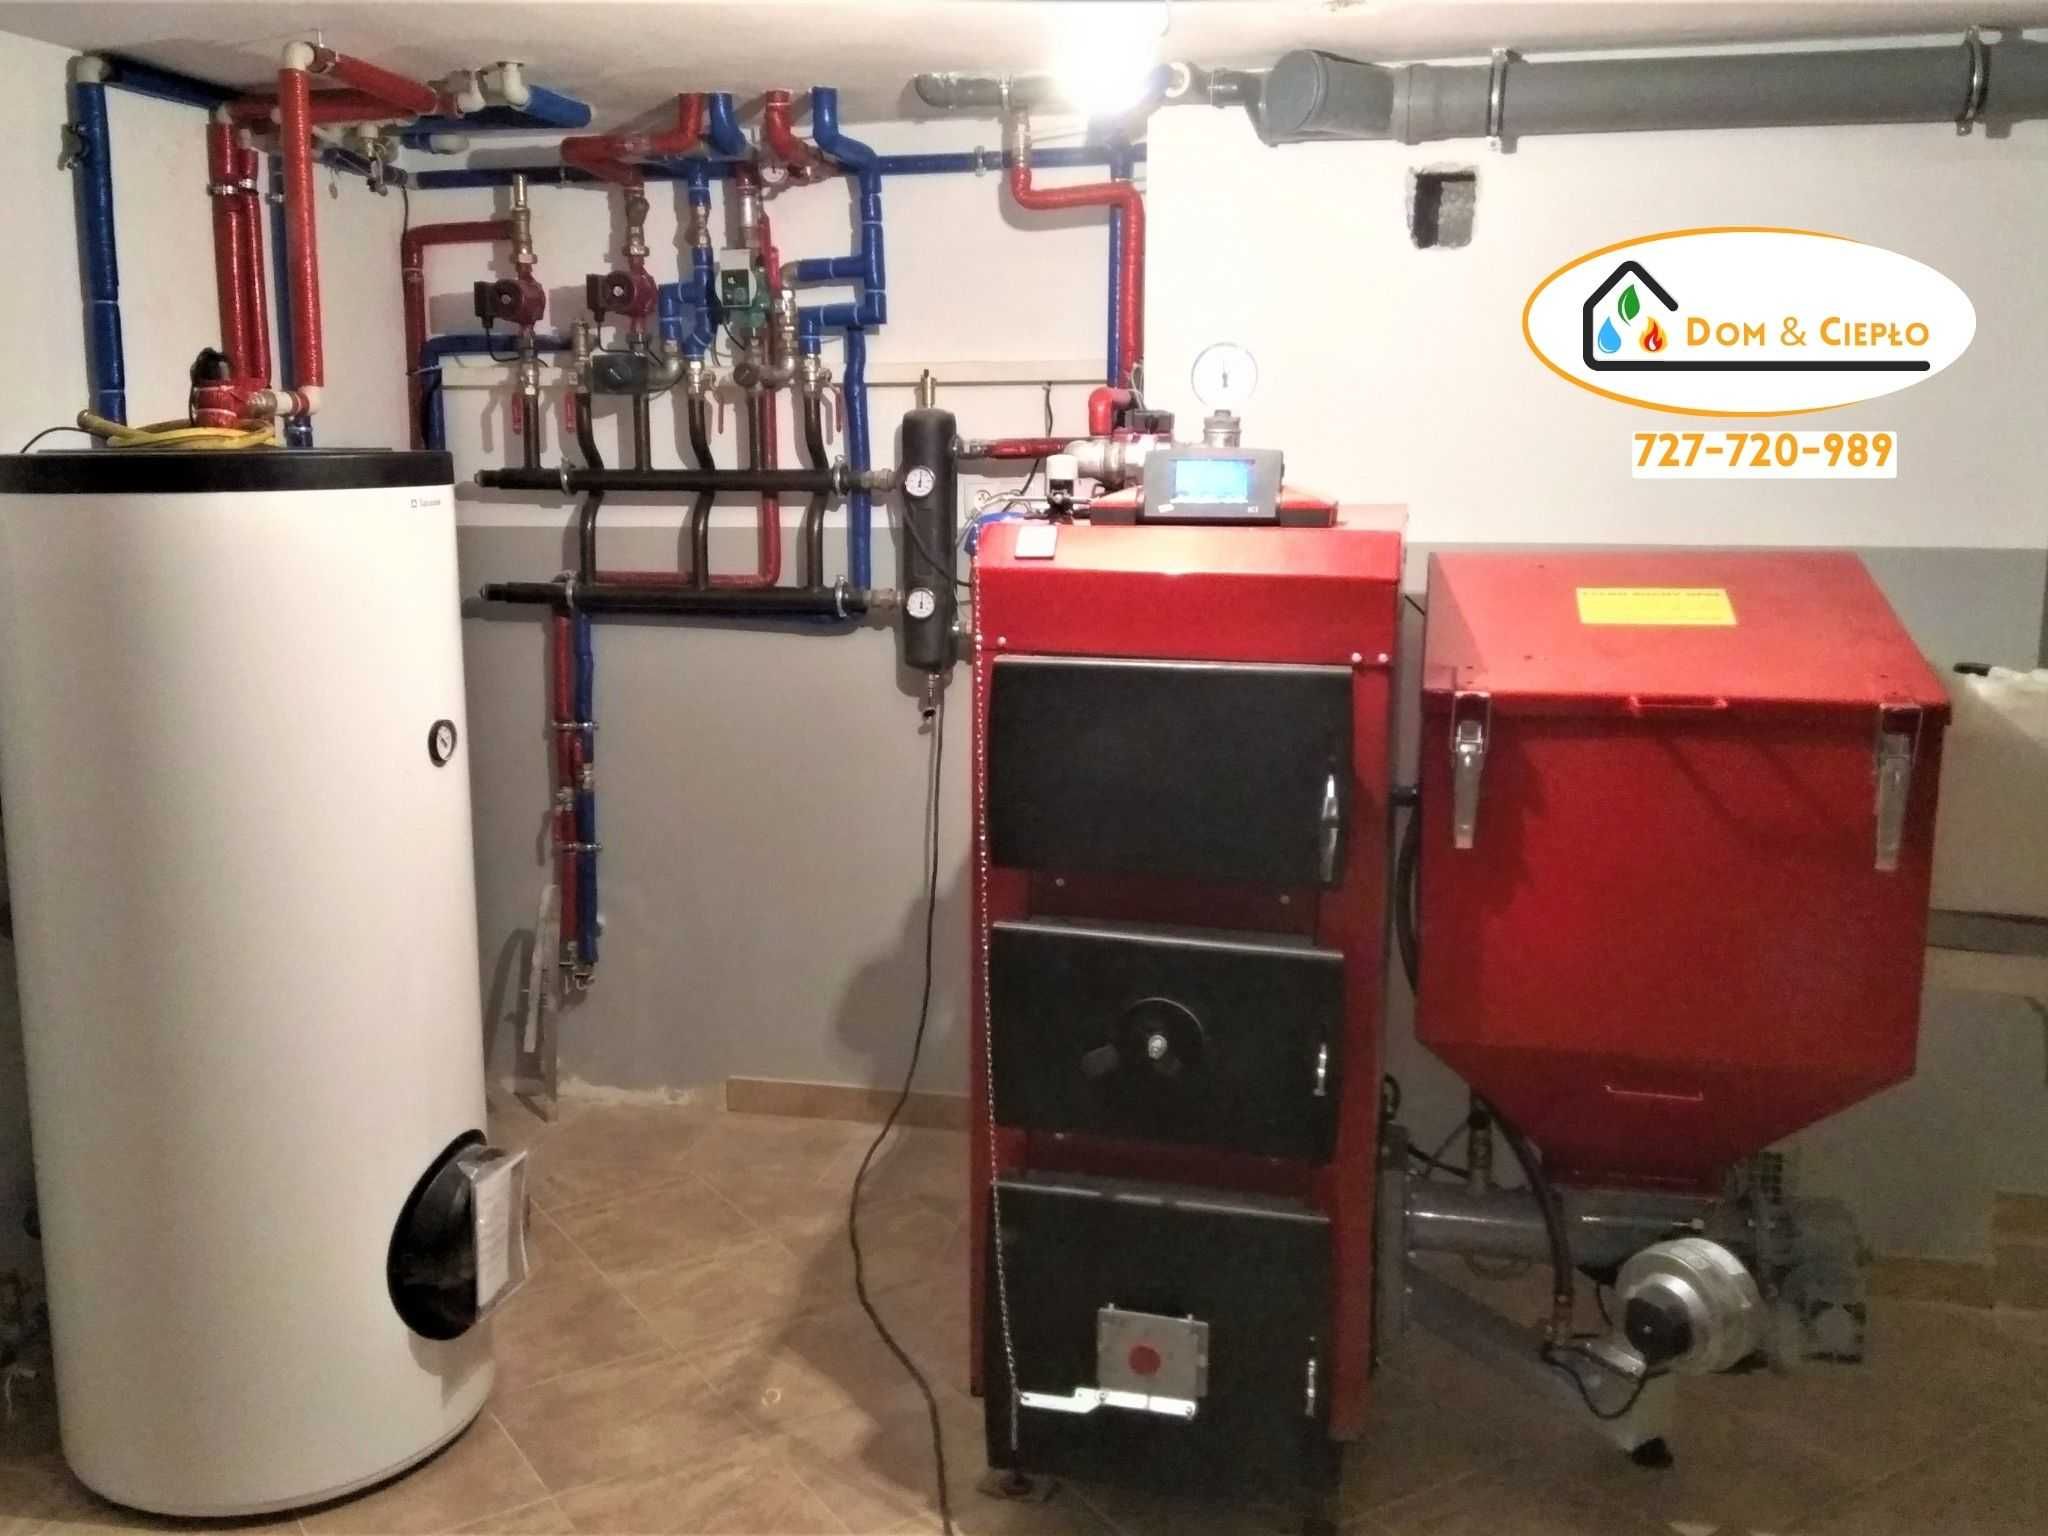 Hydraulik - Instalacje hydrauliczne, kotłownie, pompa ciepła, studnie